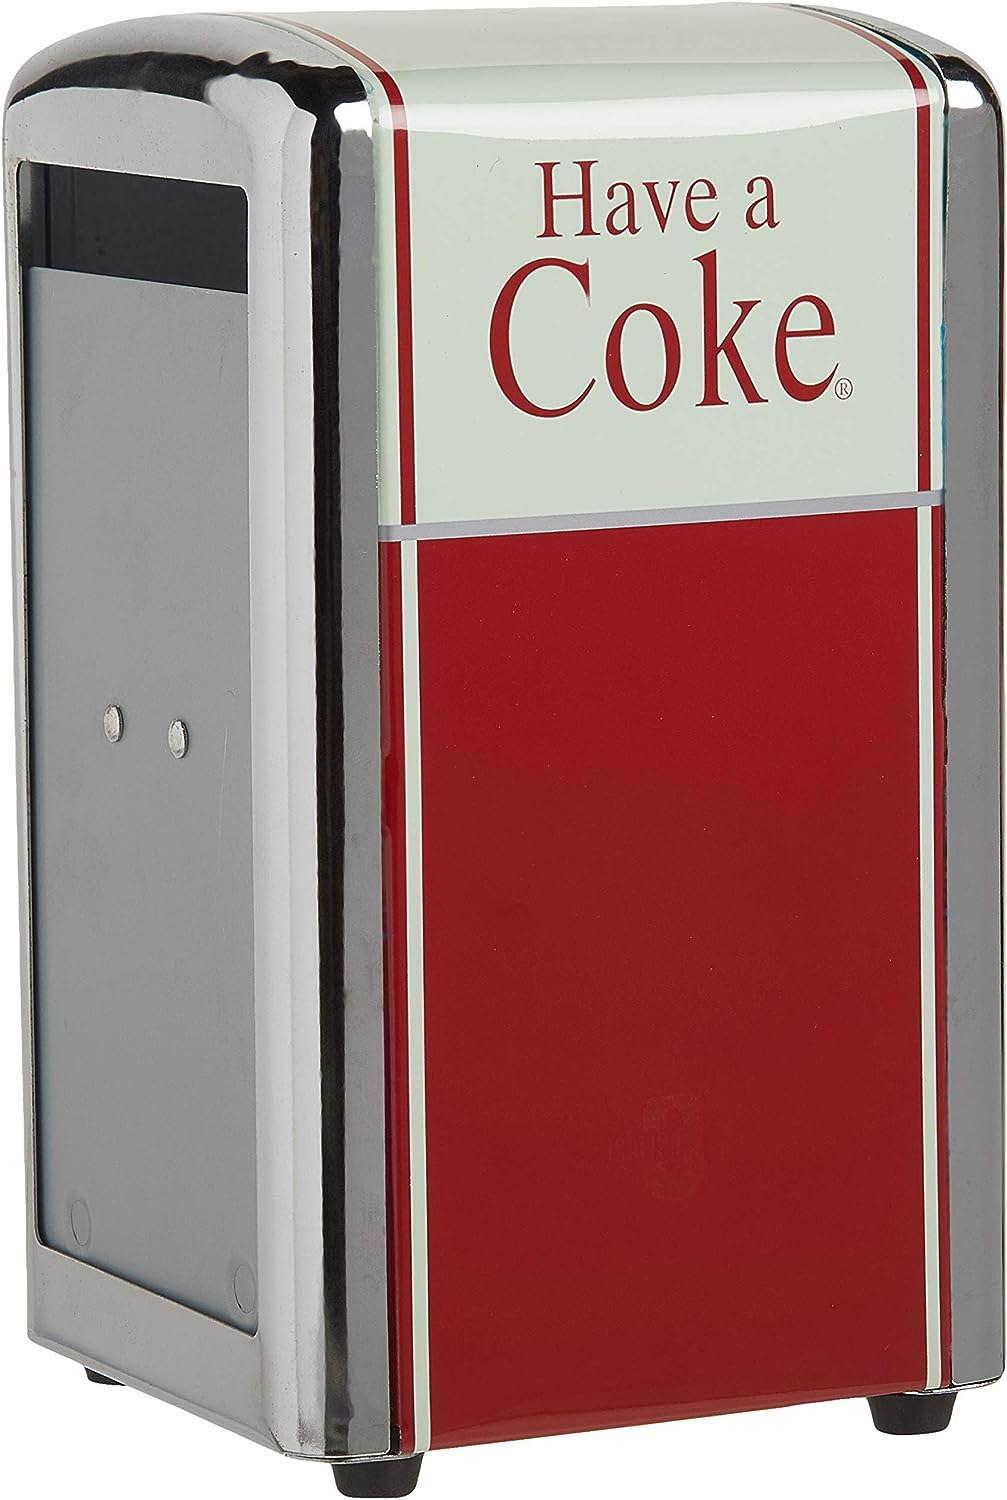 Coca-Cola Have a Coke Napkin Dispenser Small